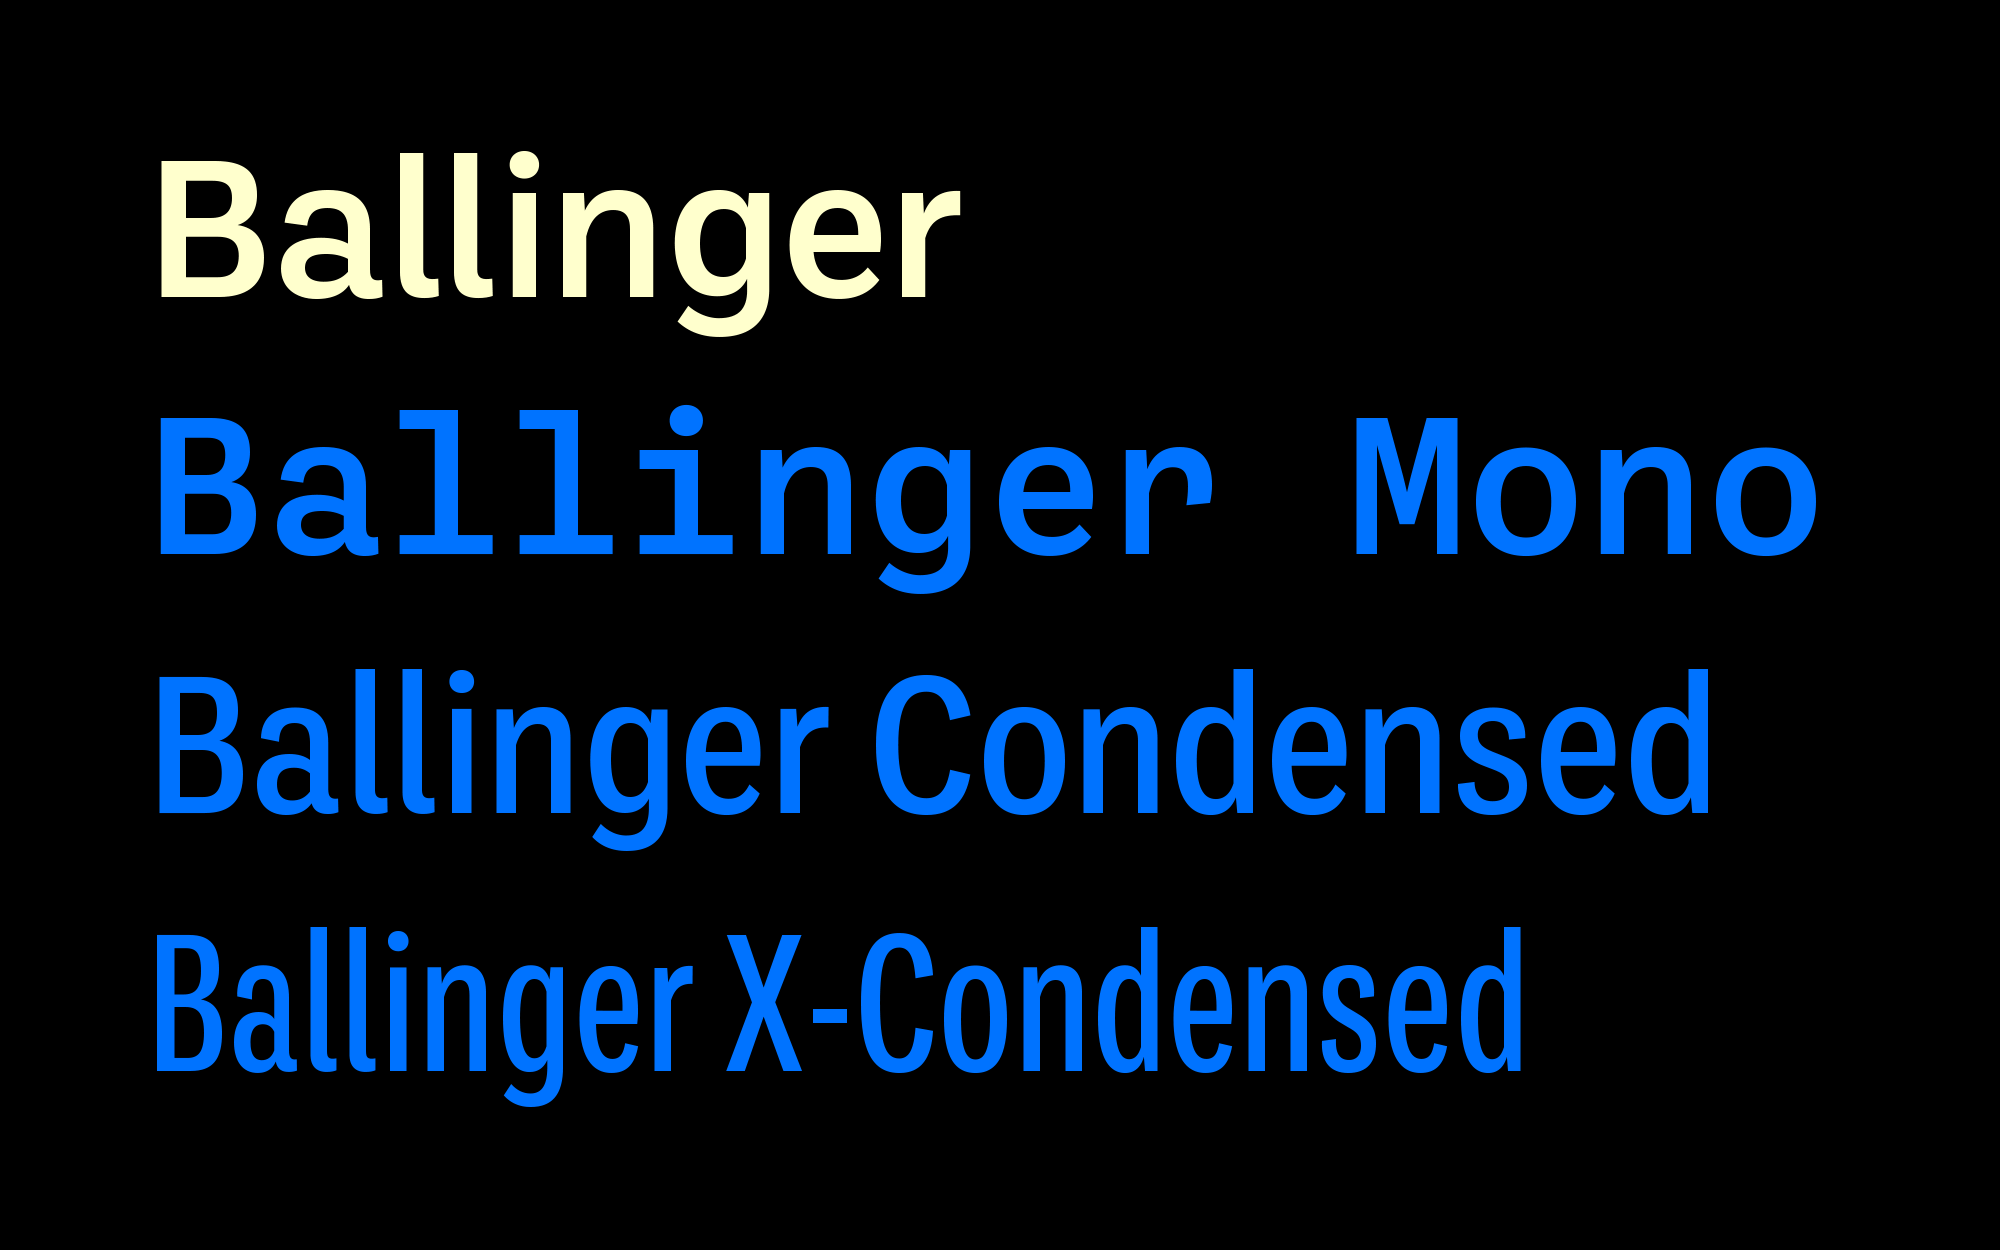 Cover image: Ballinger